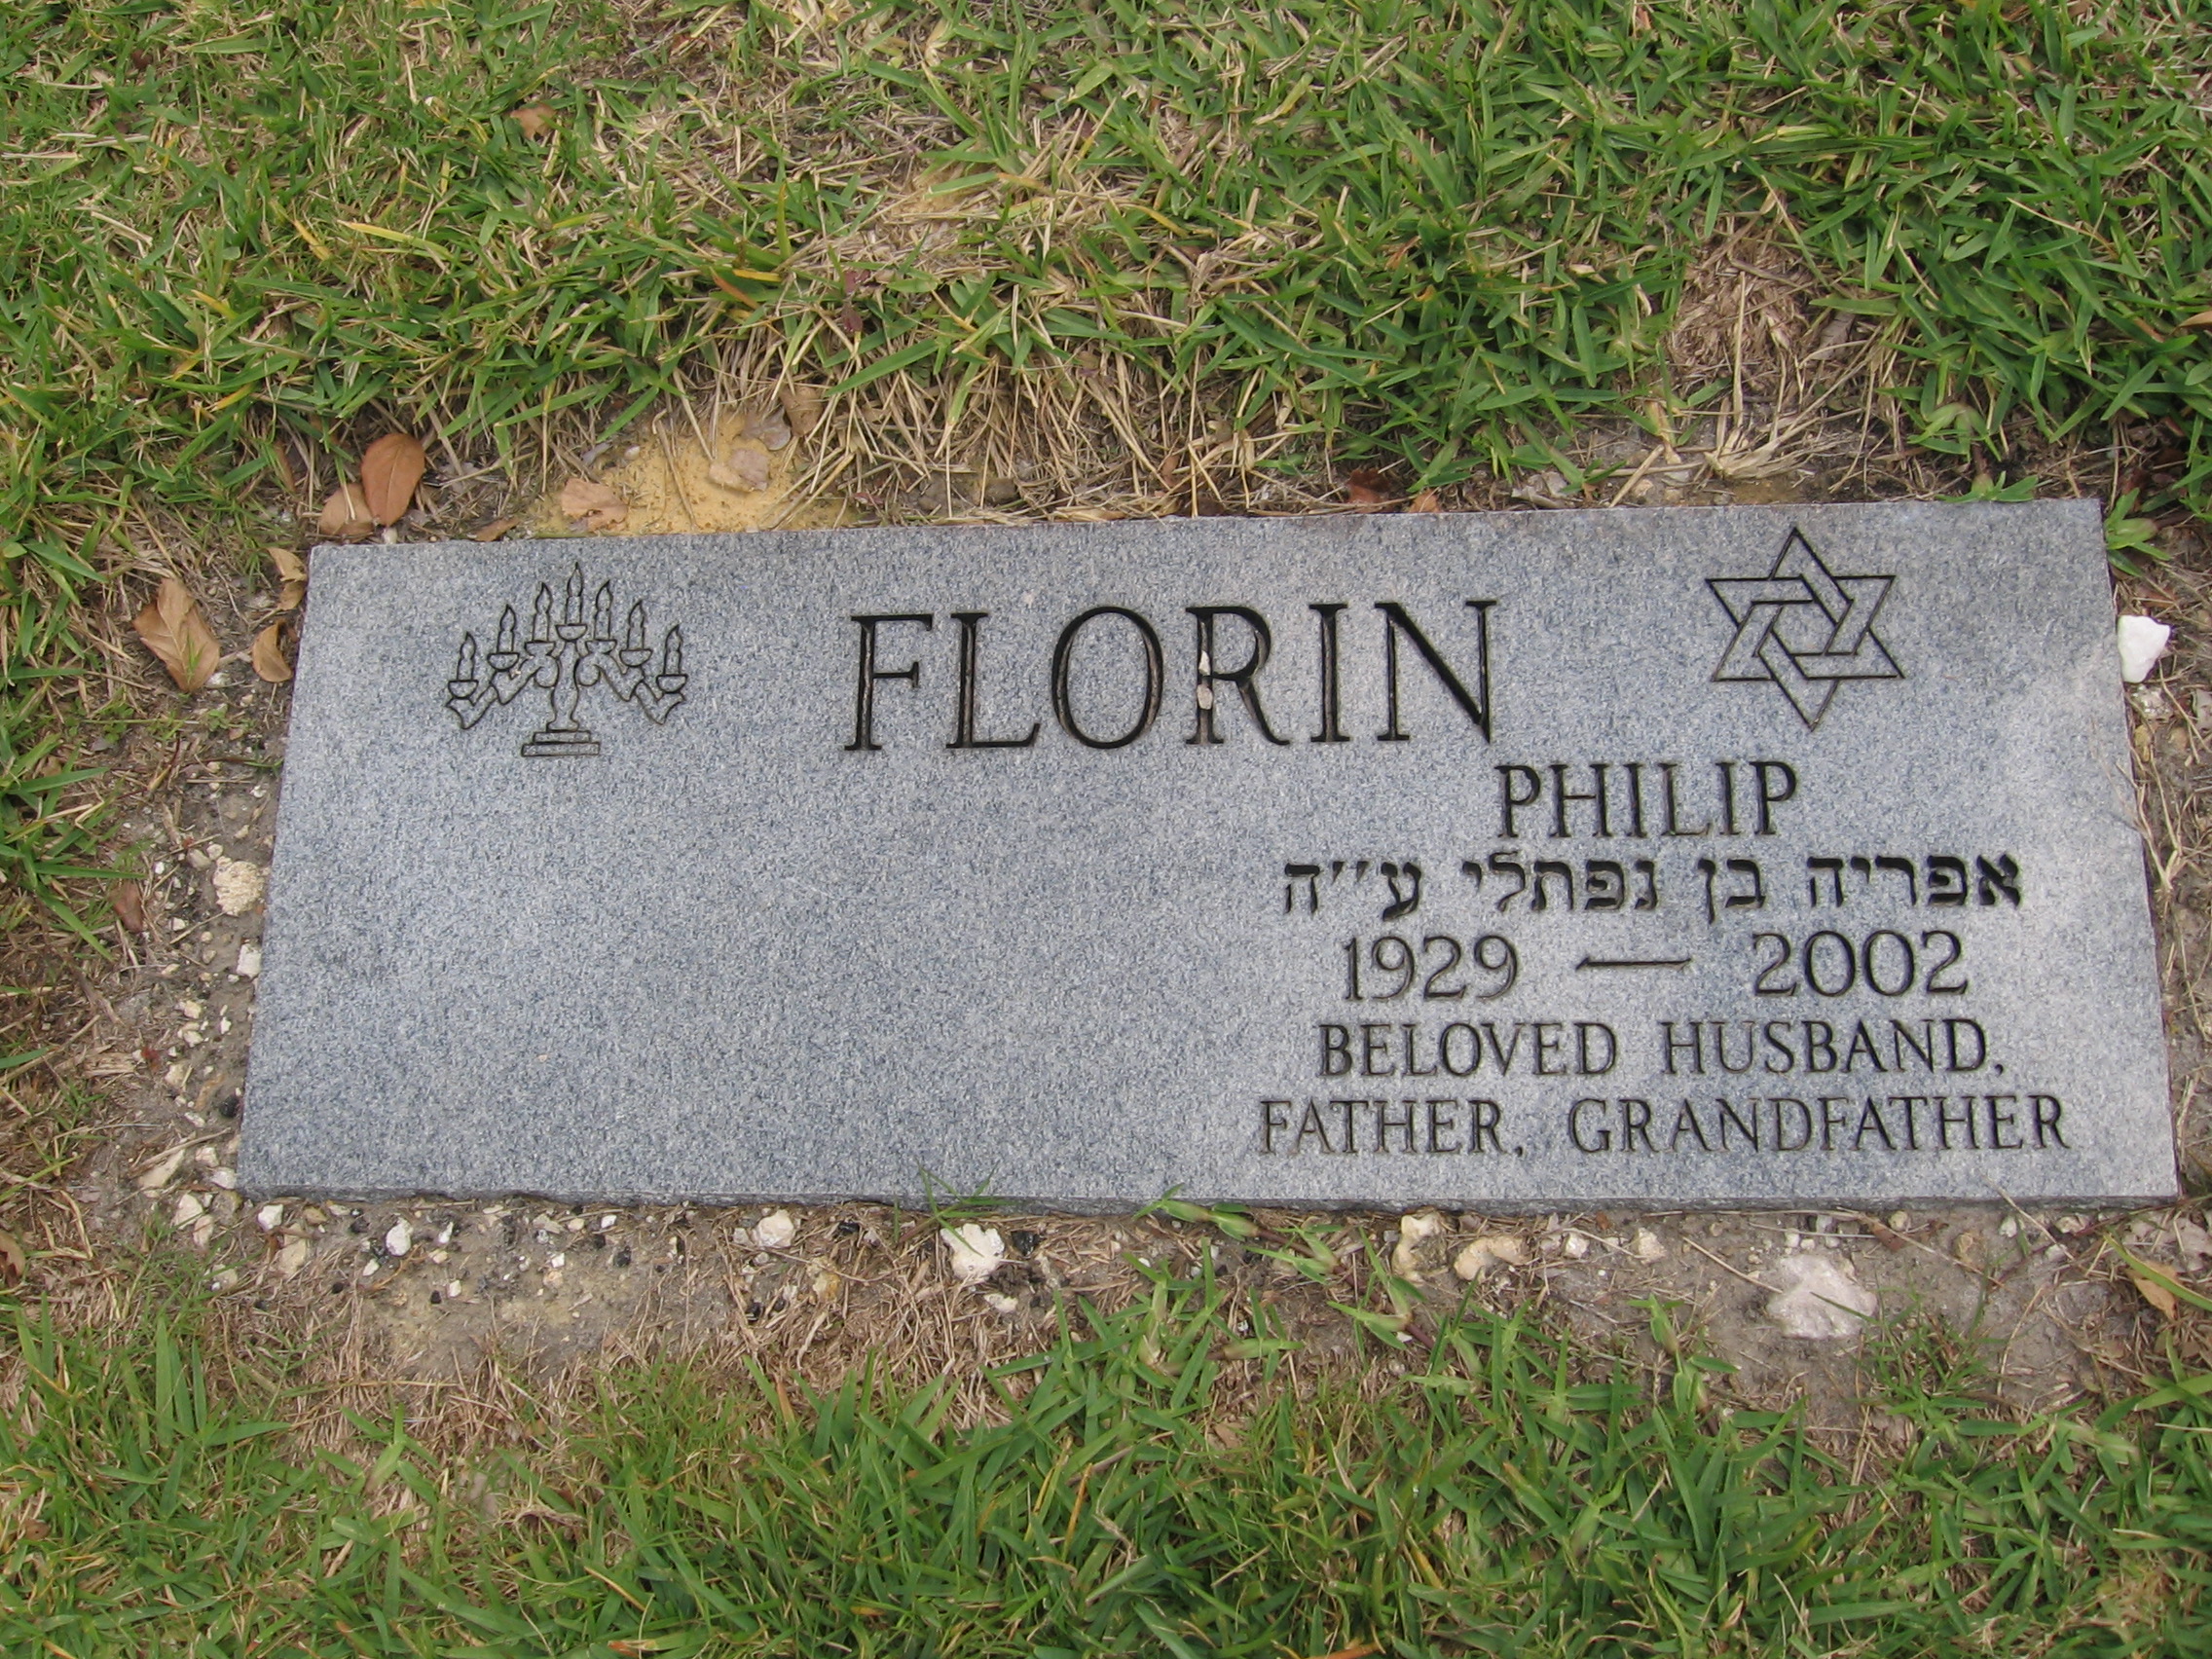 Philip Florin